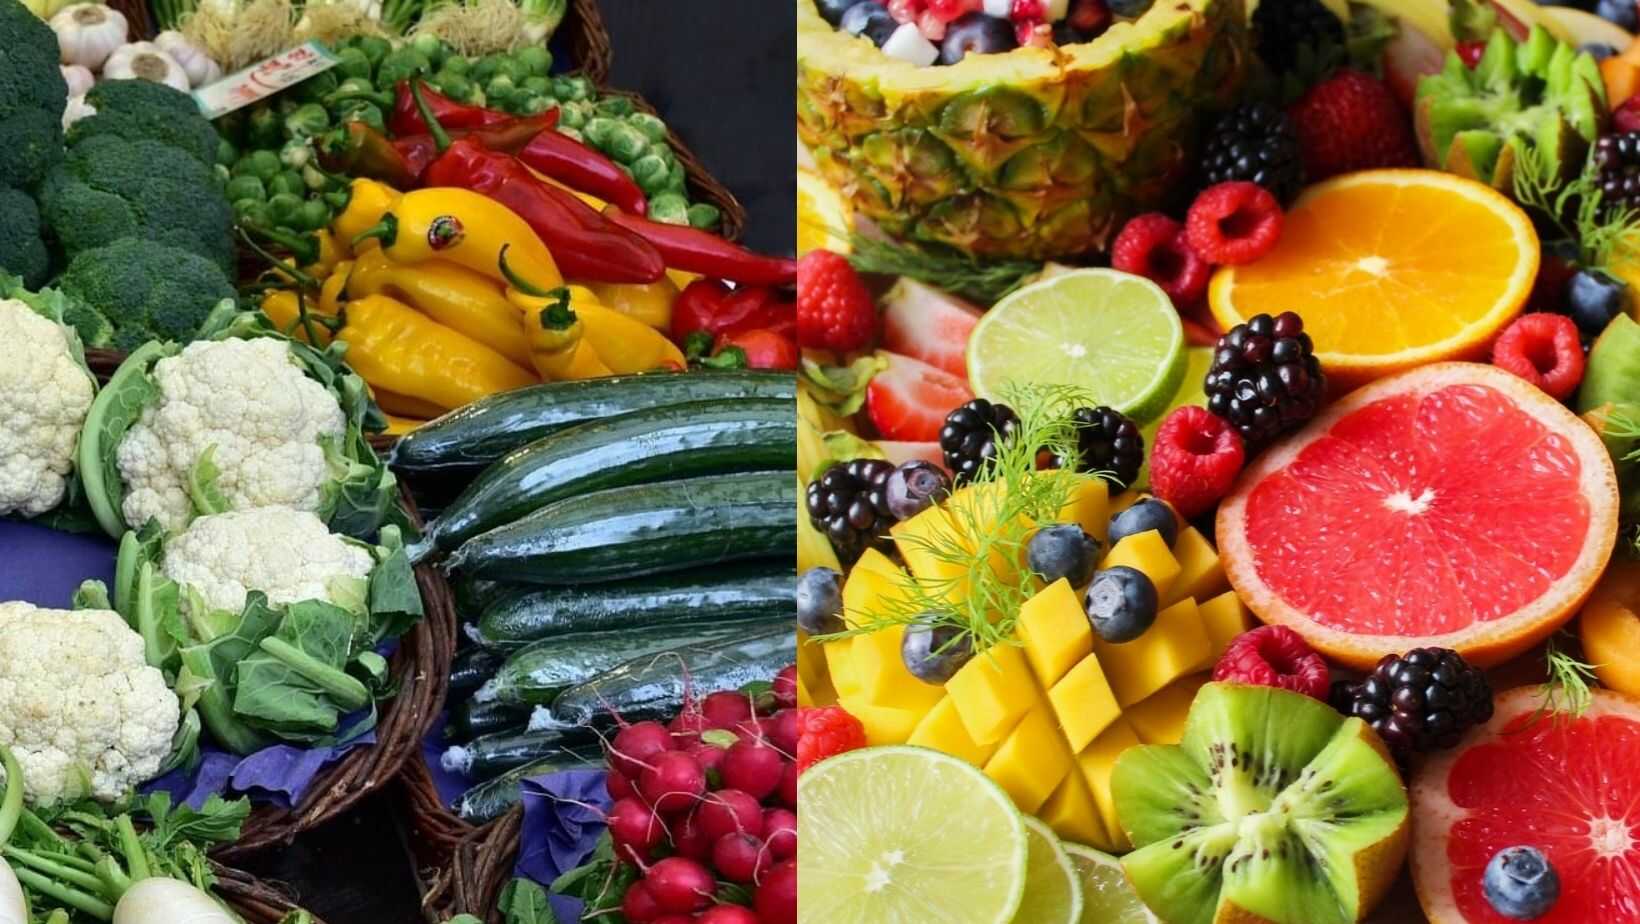 zöldség és gyümölcs alacsony szénhidrát tartalommal